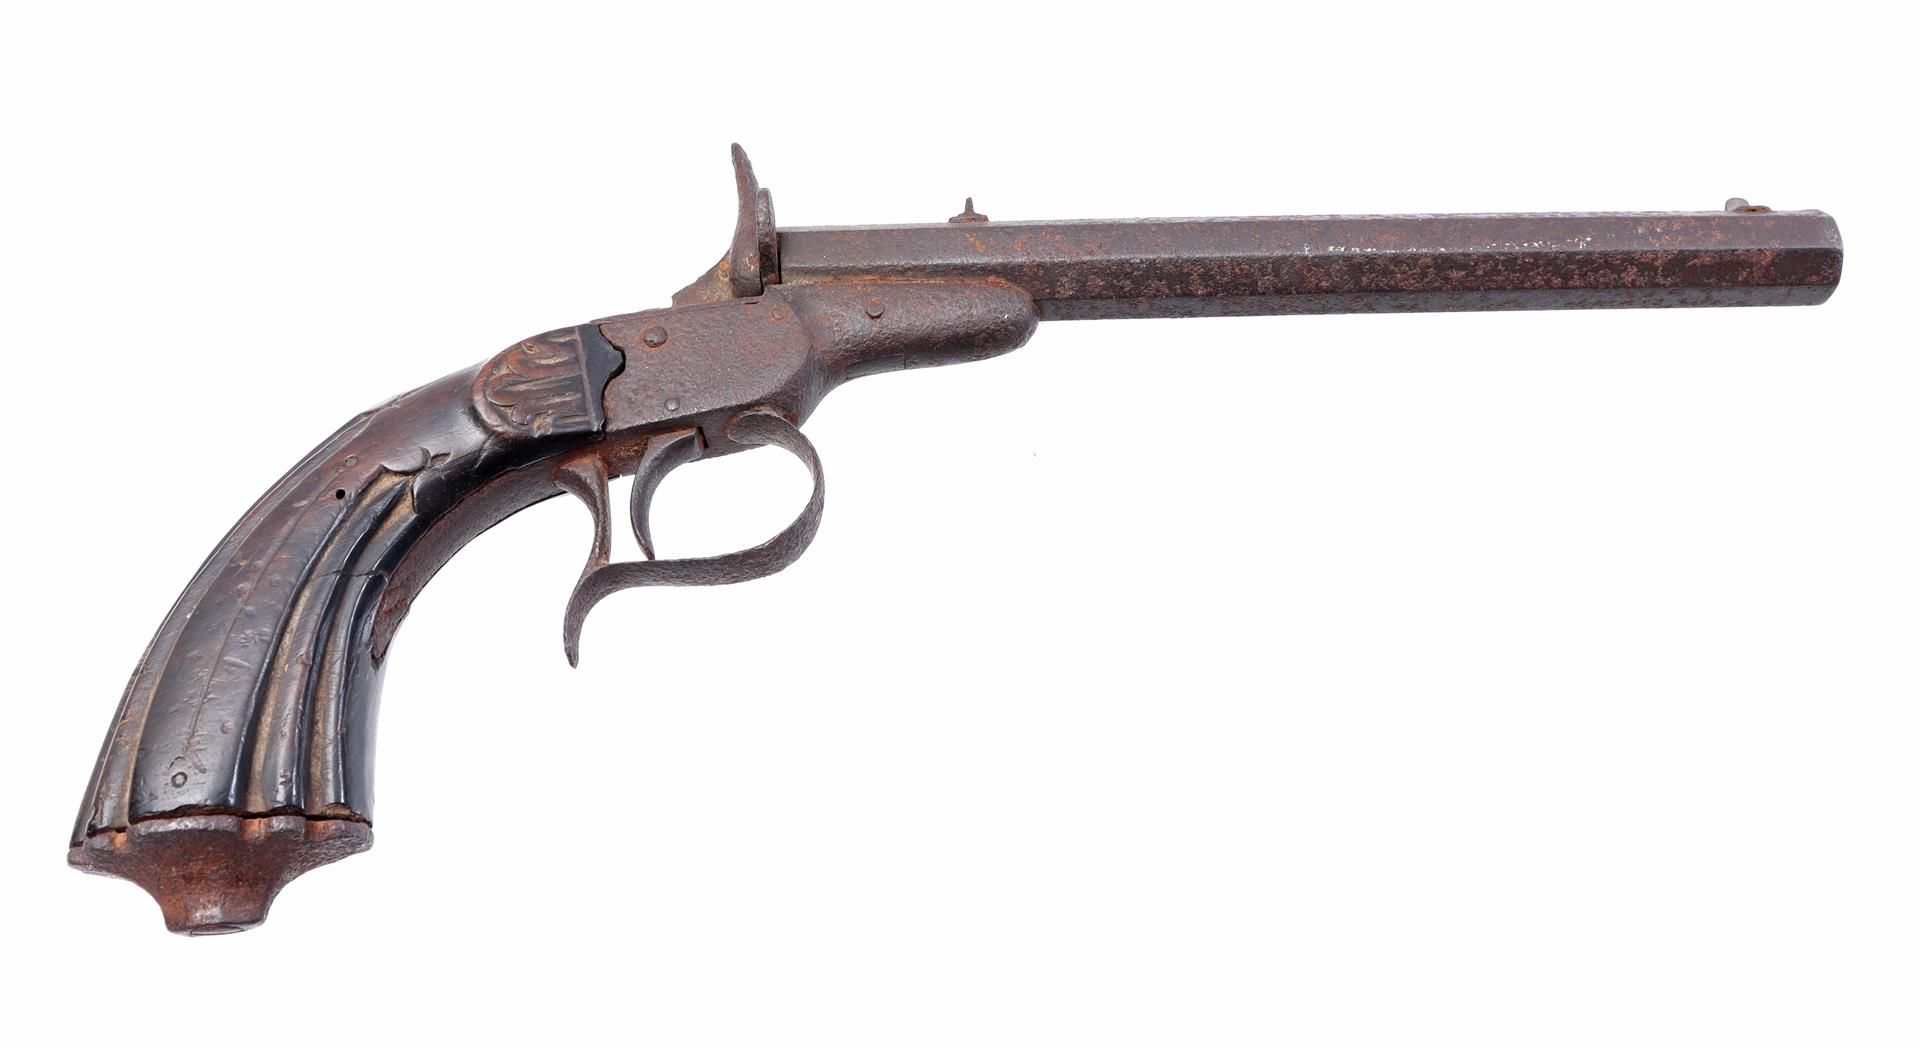 19th century pistol